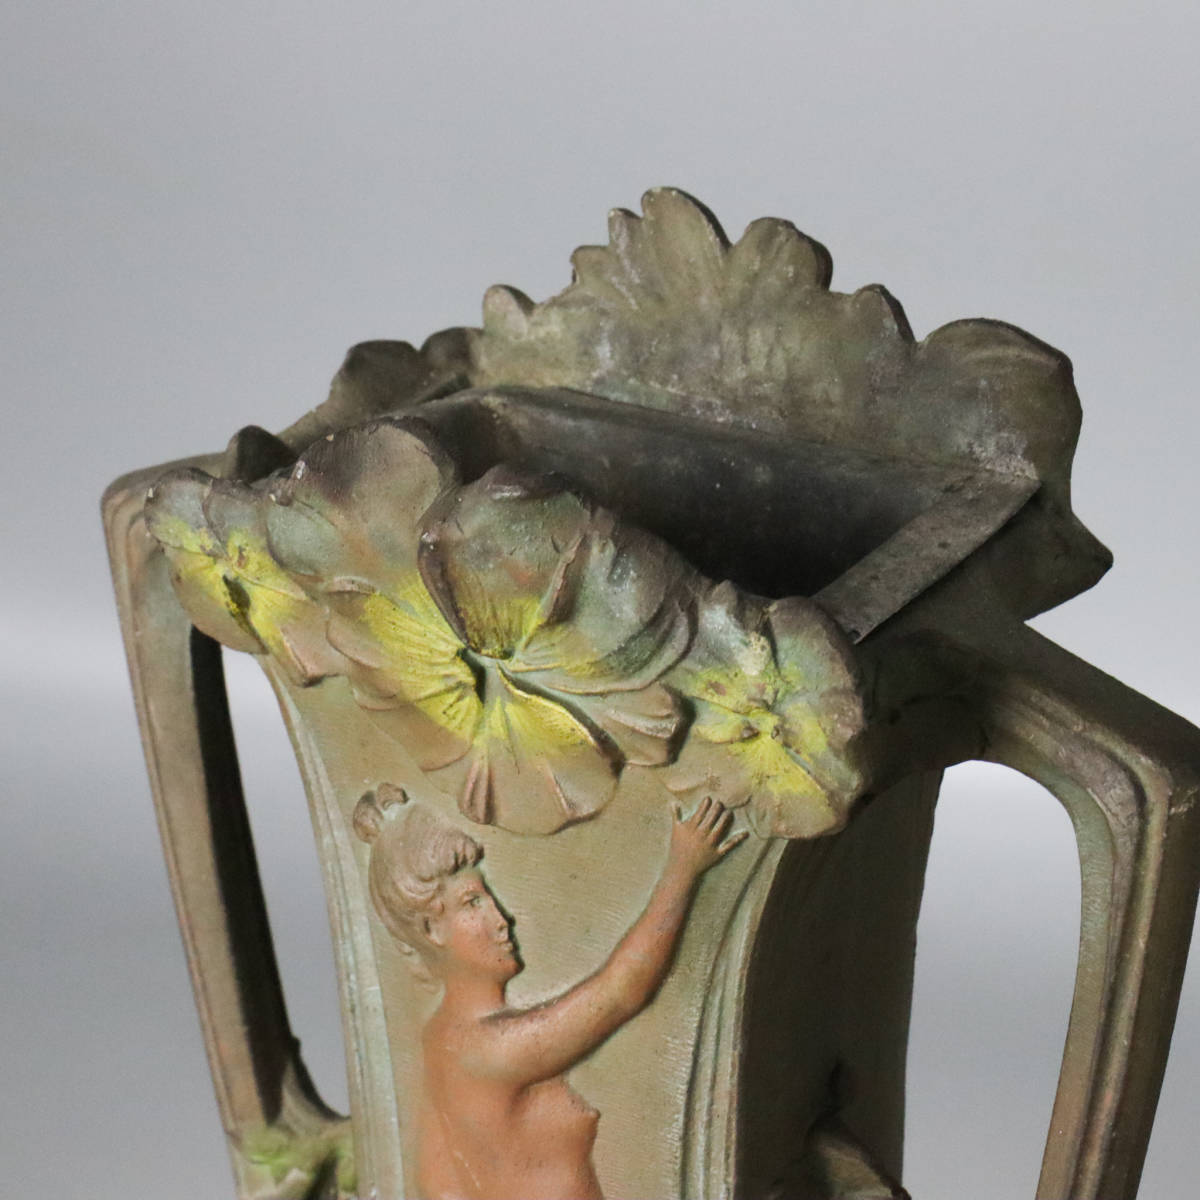 【宙】西洋美術 フランス製 ブロンズ 裸婦像花入一対 34.3cm 2176g, 2334g アール・ヌーヴォー様式 花器 花瓶 古美術品 12S26.hl.D_画像3